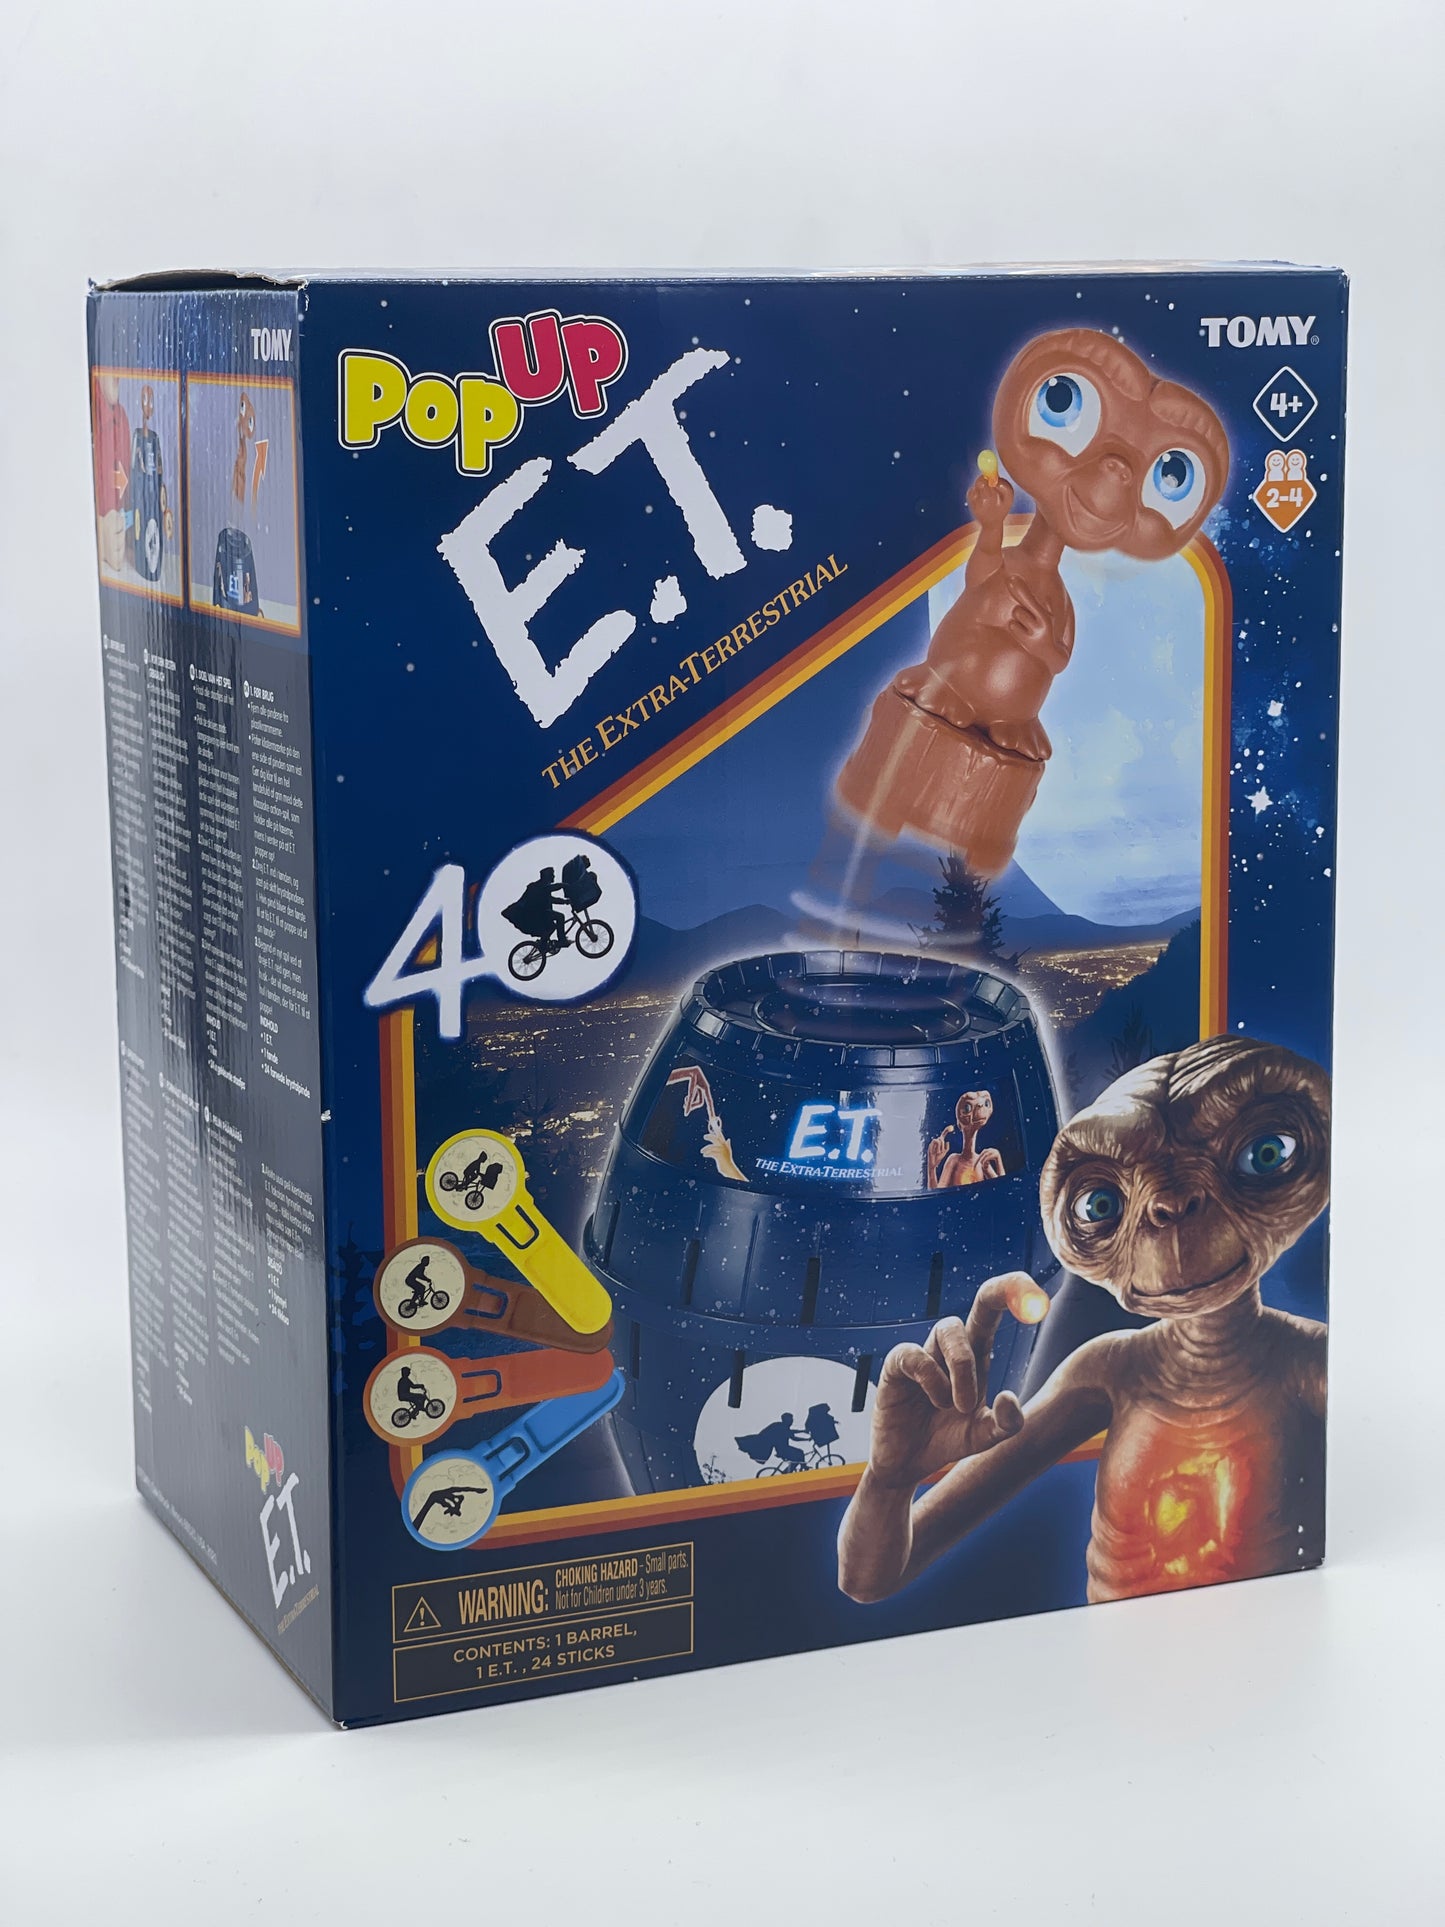 E.T. der Außerirdische "Pop-Up Spiel" Extra Terrestrial 40th Anniversary (Tomy)